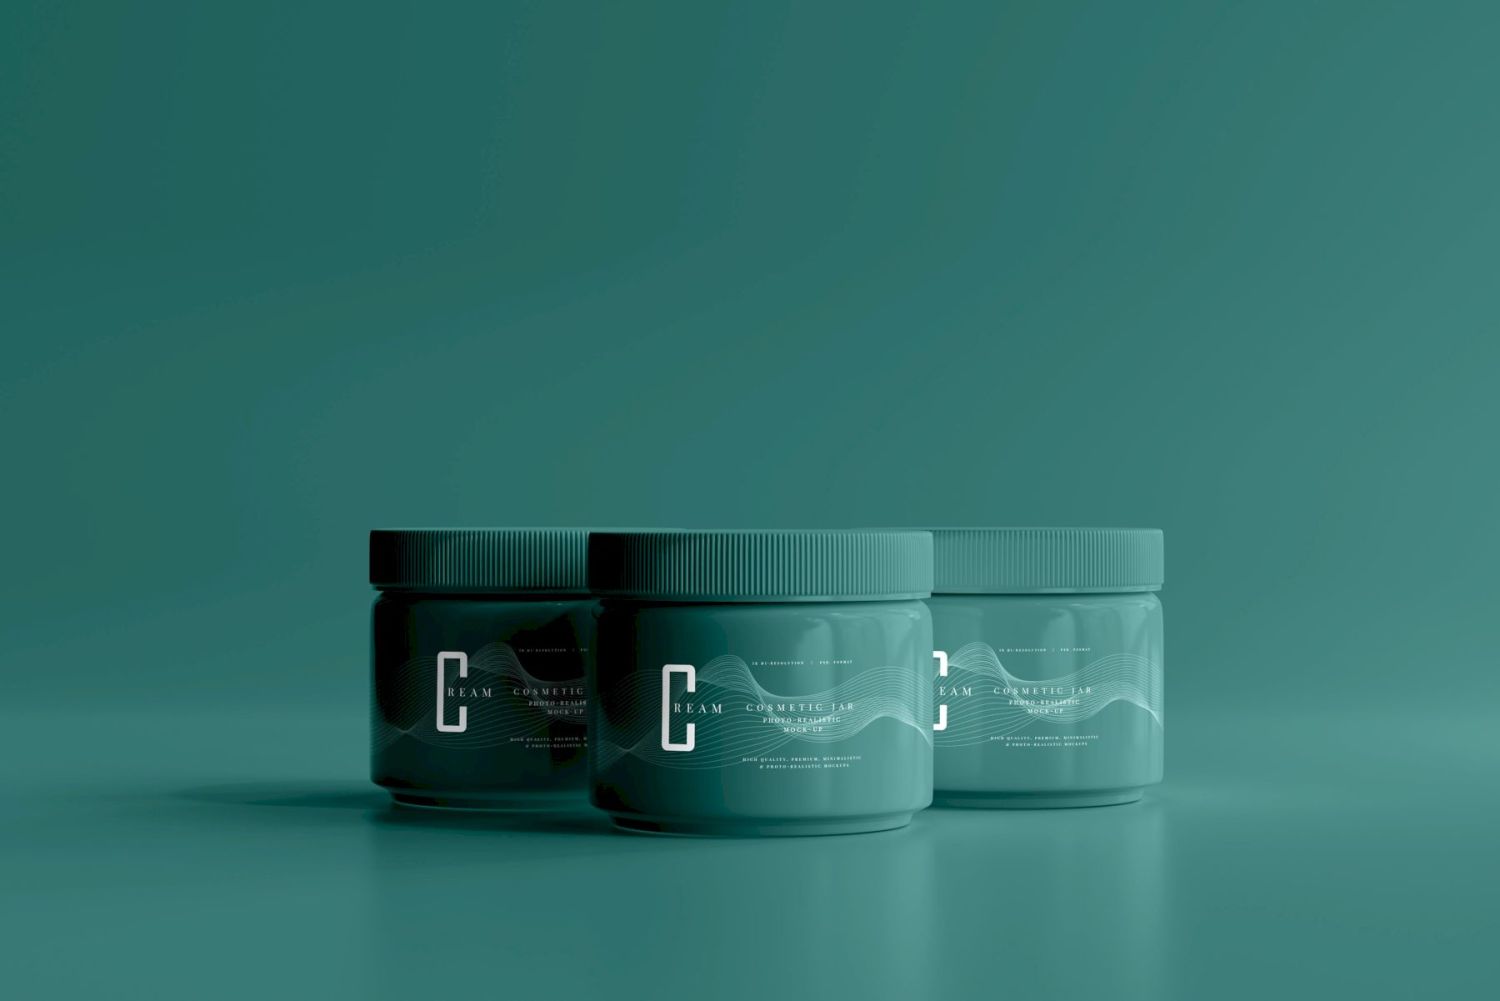 塑料化妆品罐样机 Plastic Cosmetic Jar Mockups插图9